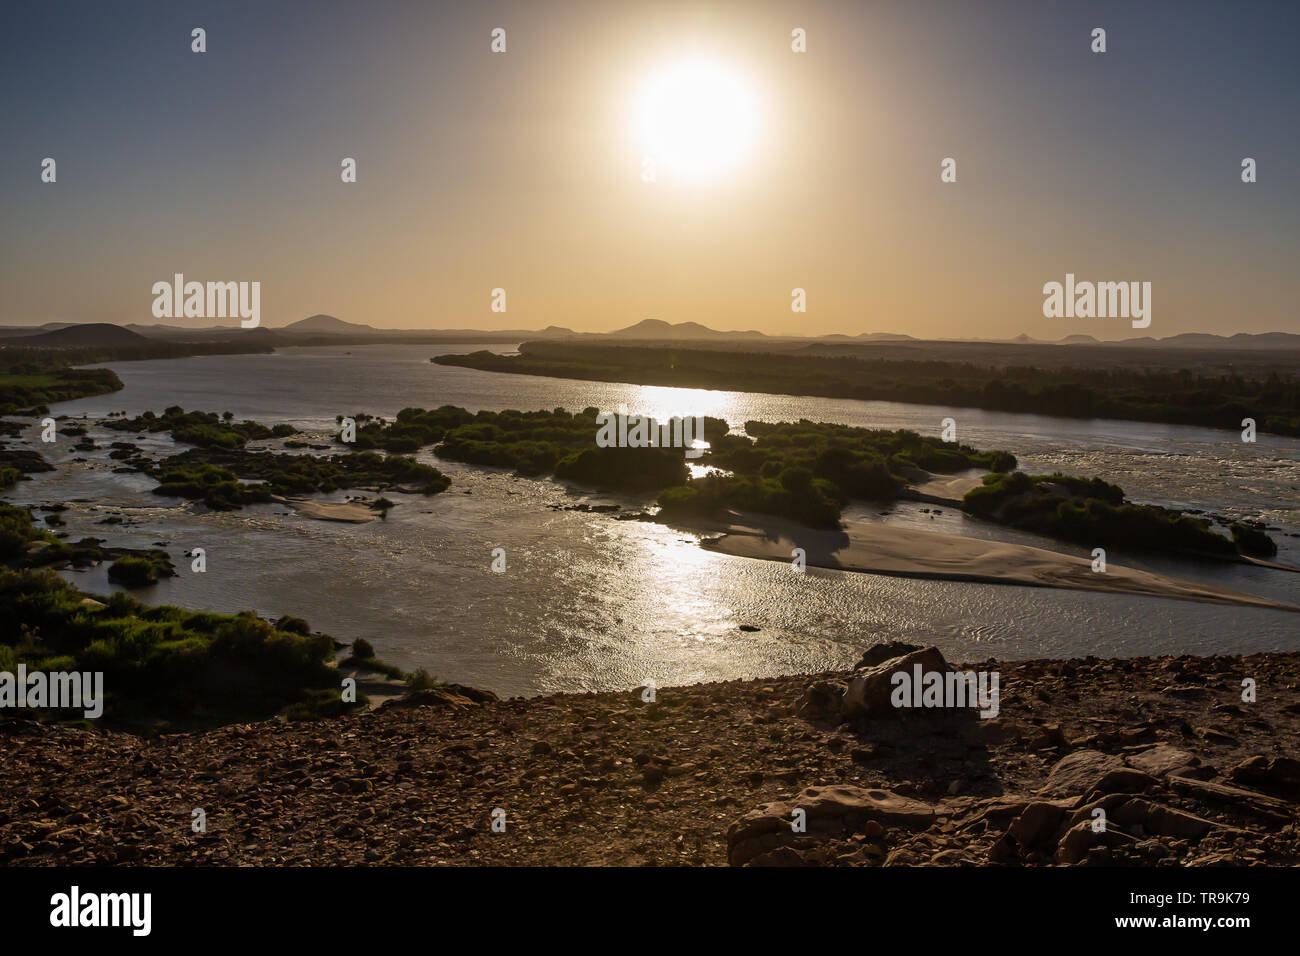 La sera presto sun si riflette vivacemente nelle acque del terzo Cataratta del Nilo nella regione nubiano sudanese Foto Stock